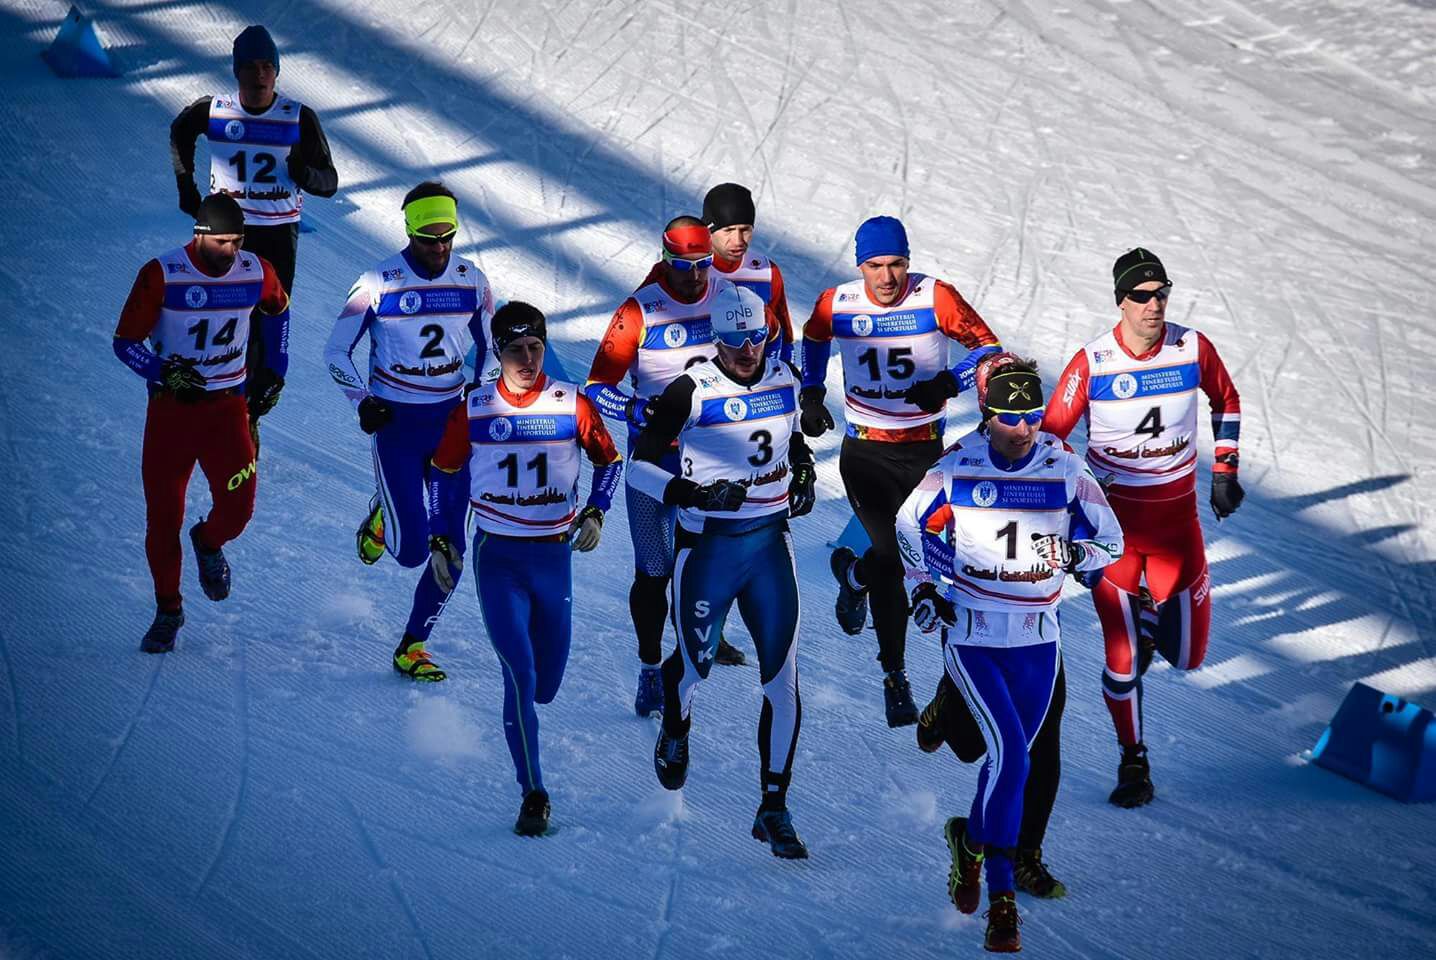 Tricolori di Winter Triathlon di Alpe Motta: ecco le start list del 26 febbraio